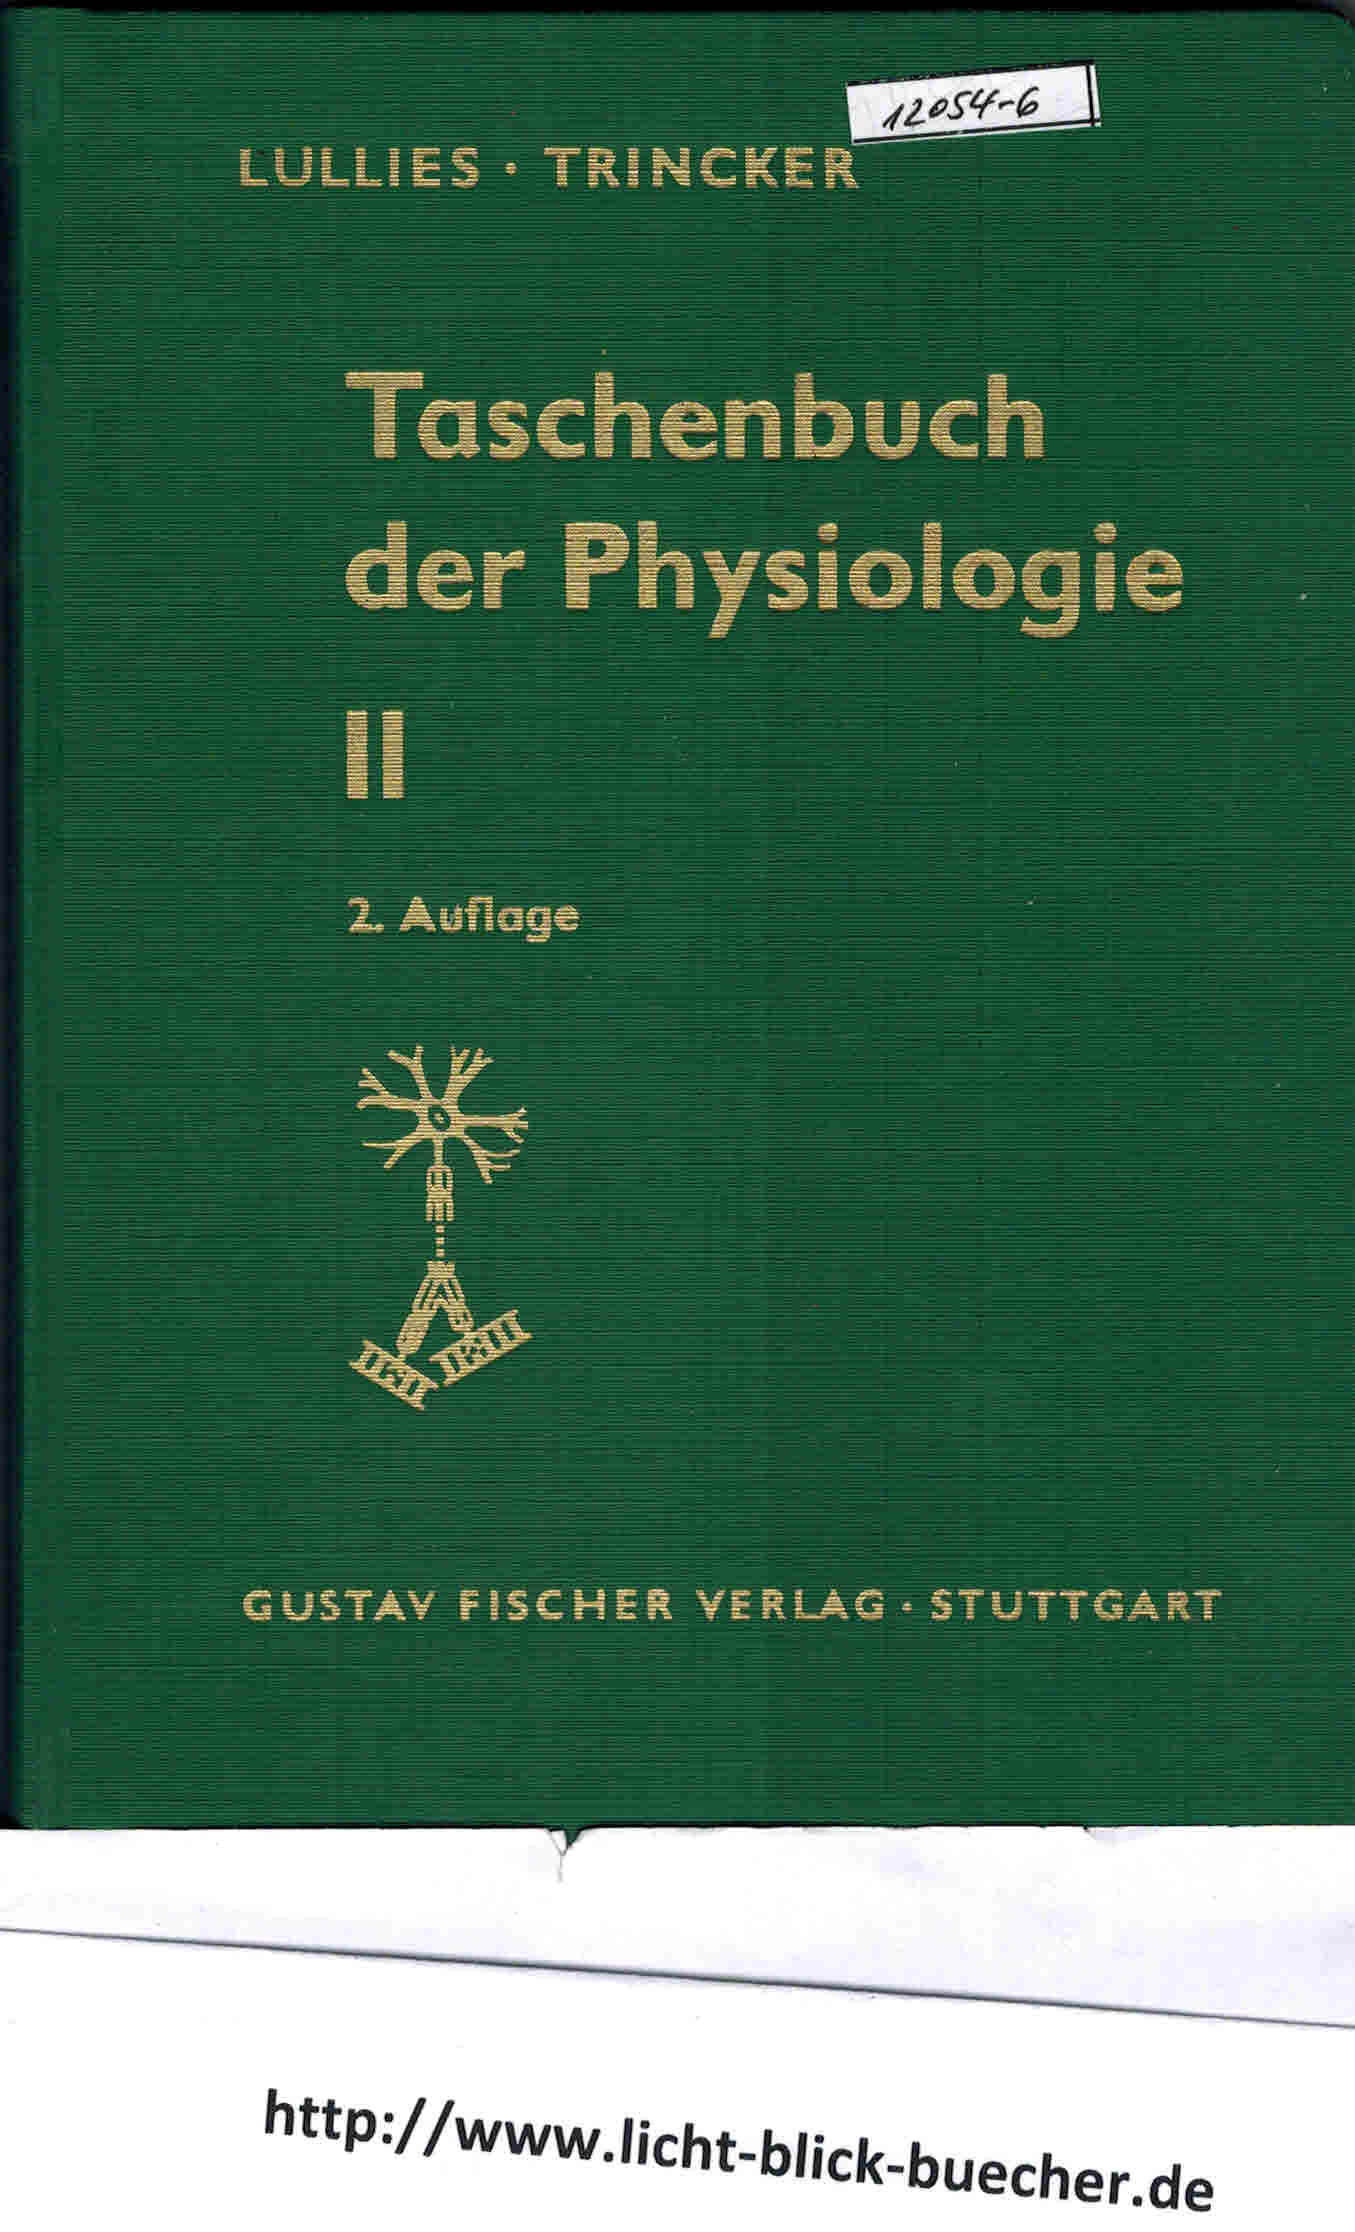 Taschenbuch der Physiologie Band IIAllgemeine Nerven-und MuskelphysiologieLullies / Trincker